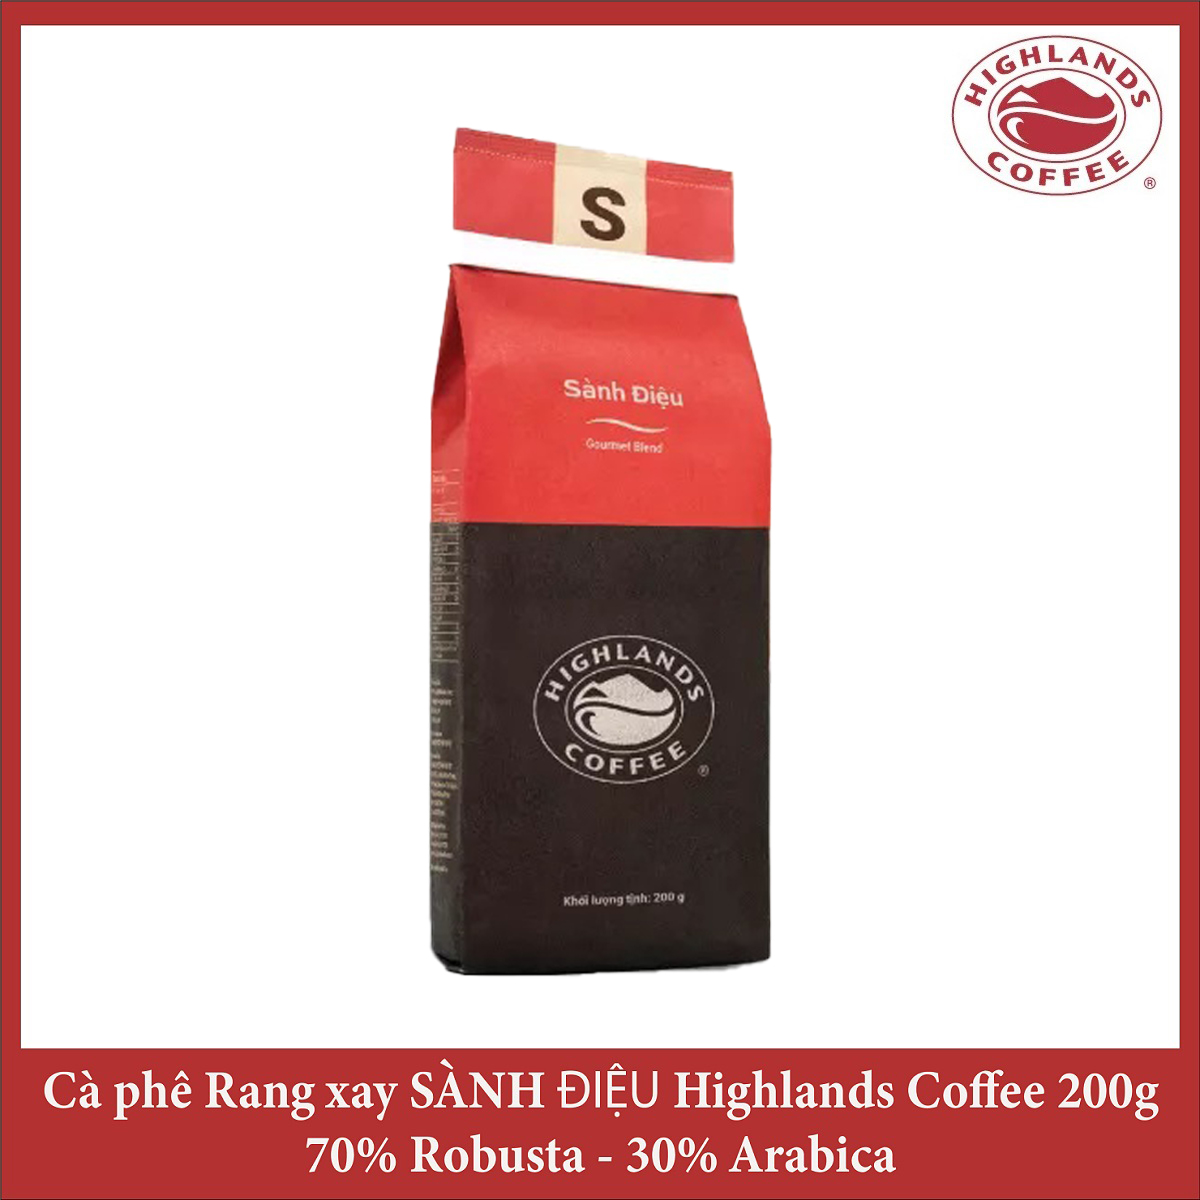 Cà phê rang xay Sành điệu Highlands coffee 200g - Gourmet Blend